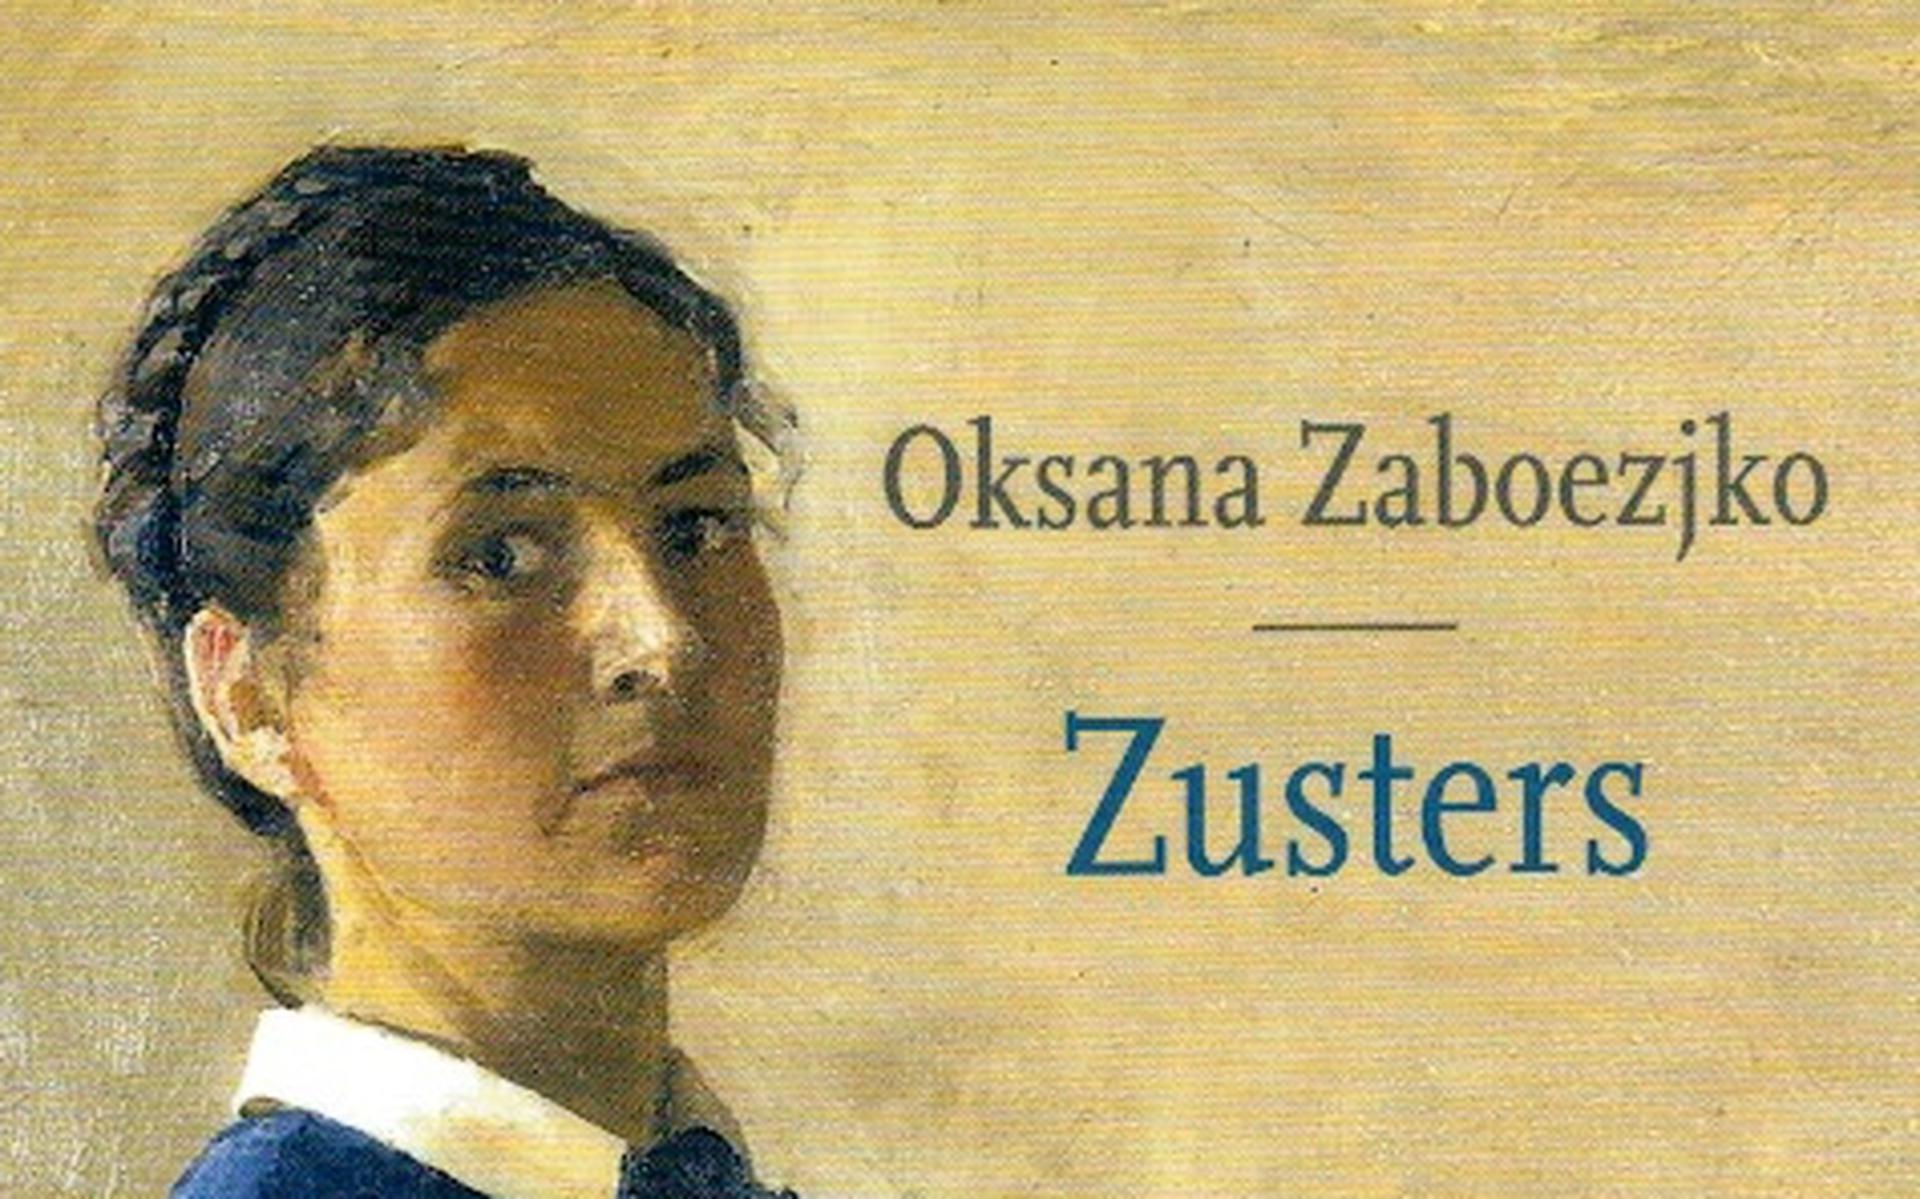 Omslag 'Zusters' van Oksana Zaboezjko.